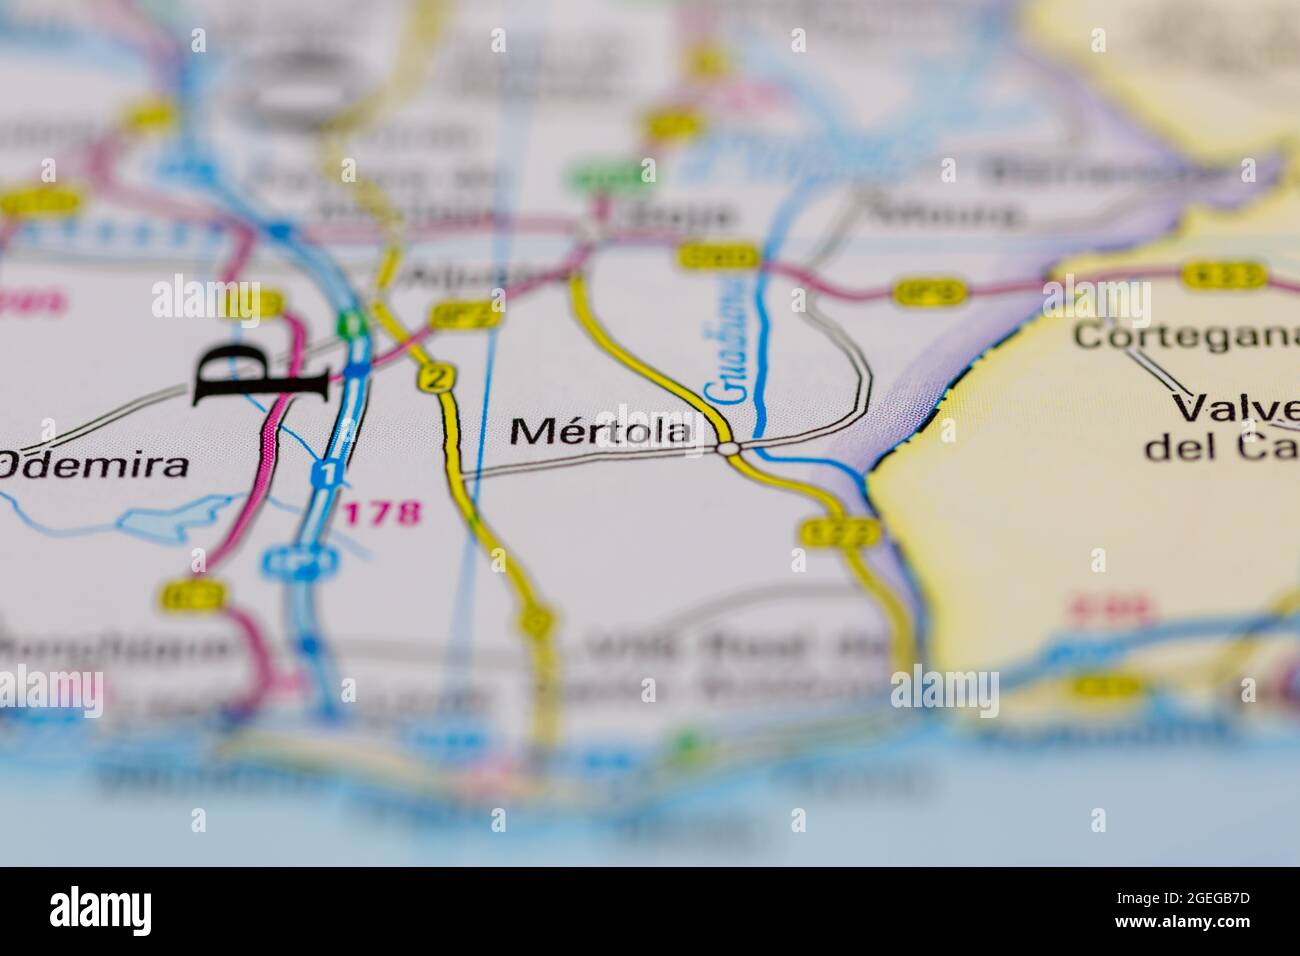 Mertola Portugal aparece en un mapa de carreteras o en un mapa geográfico Foto de stock